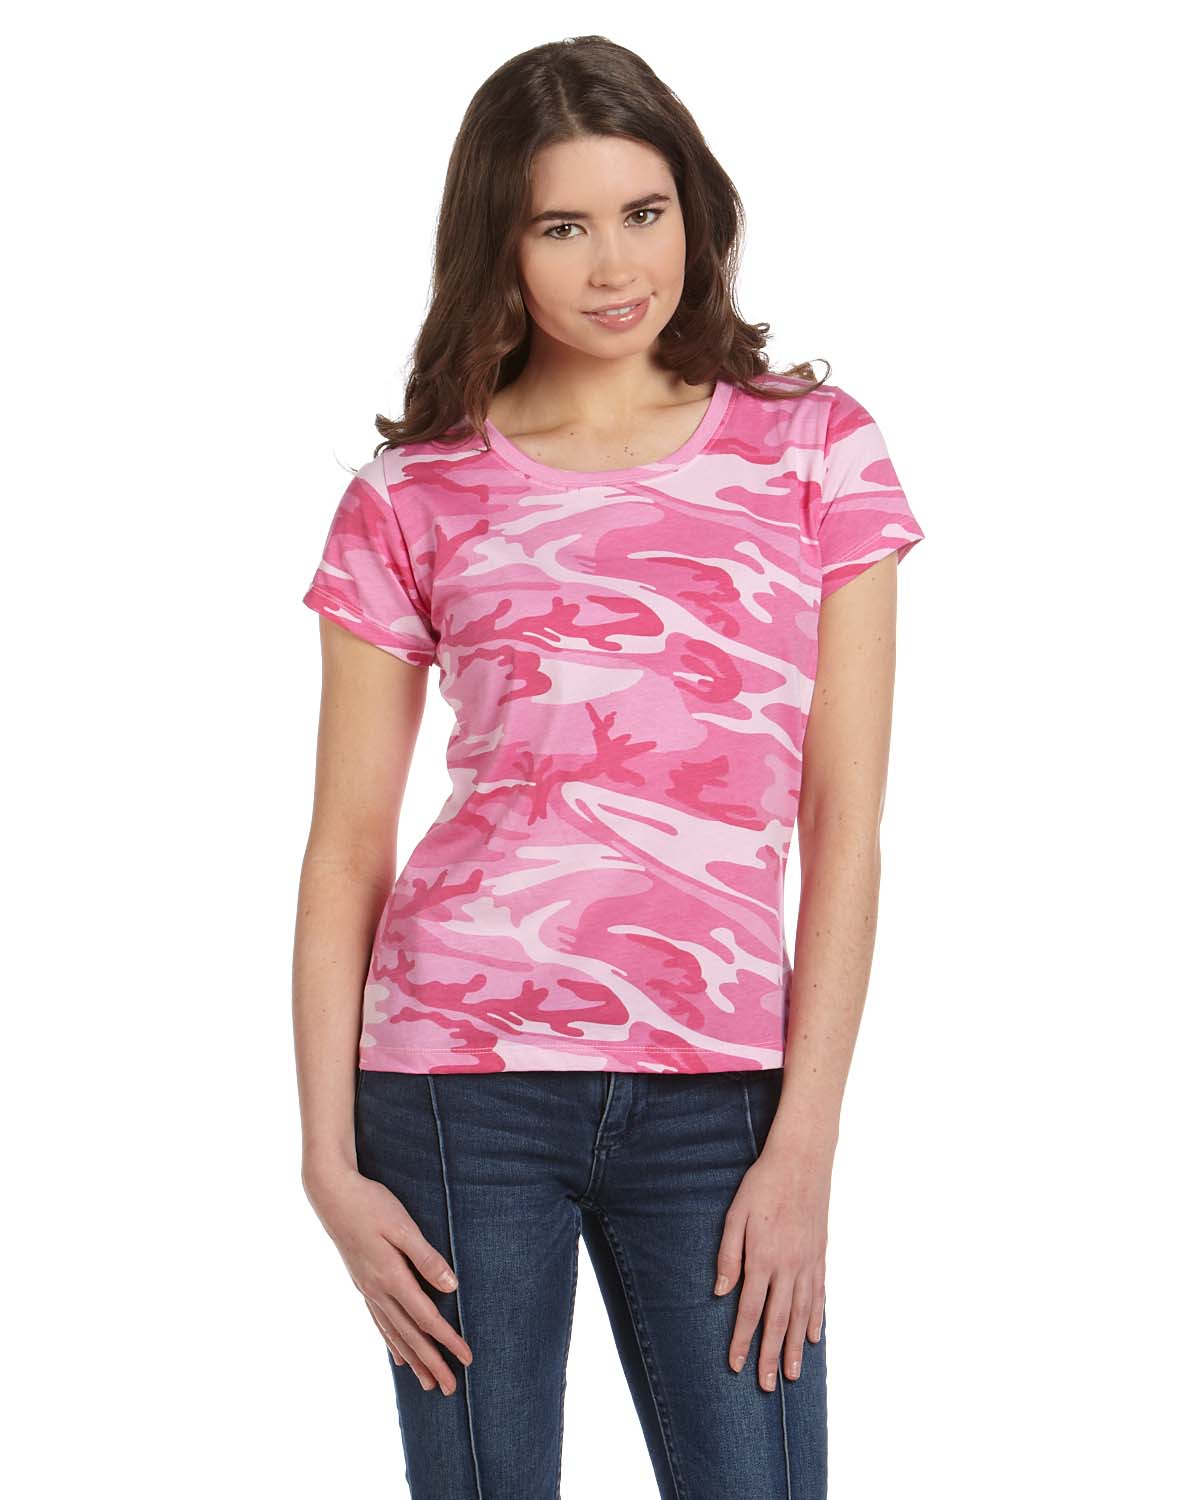 Code V 3665 Womens Camouflage T Shirt Shirtmax